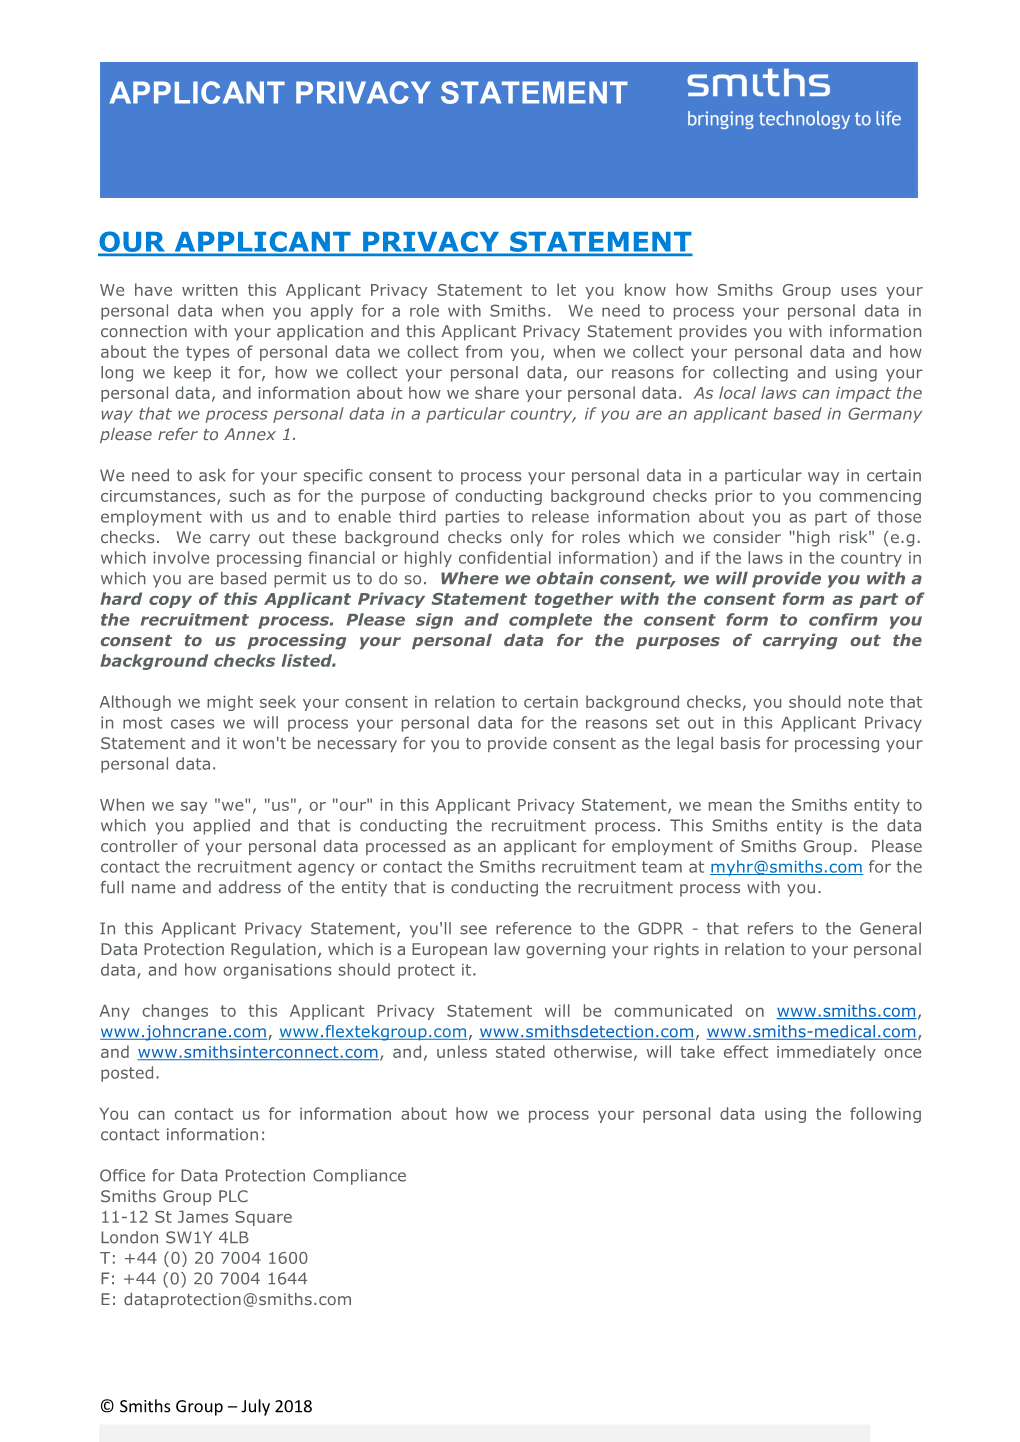 Applicant Privacy Notice (PDF)